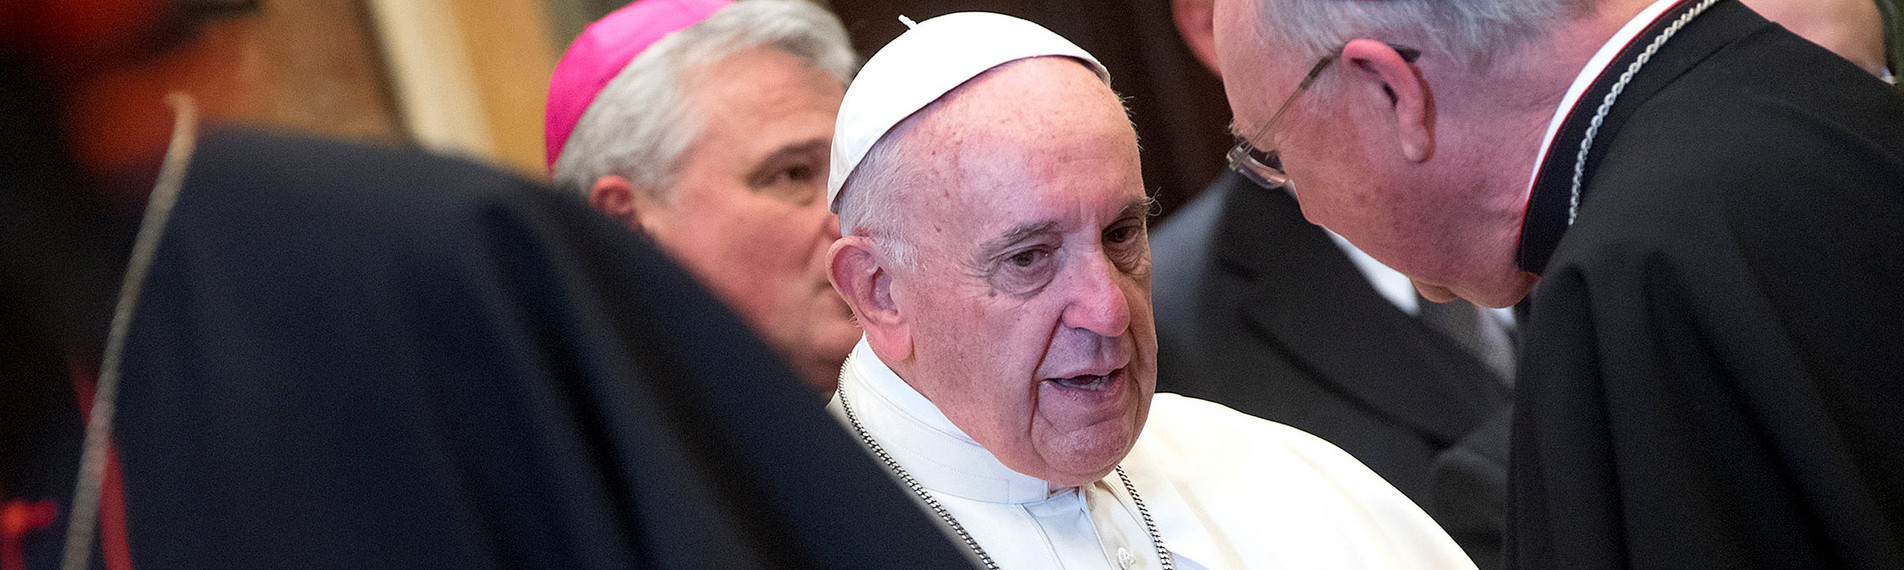 Papst Franziskus kämpft für eine Kirche der Armen und eine Reform der Kurie. Foto: ZDF/Claudio Peri